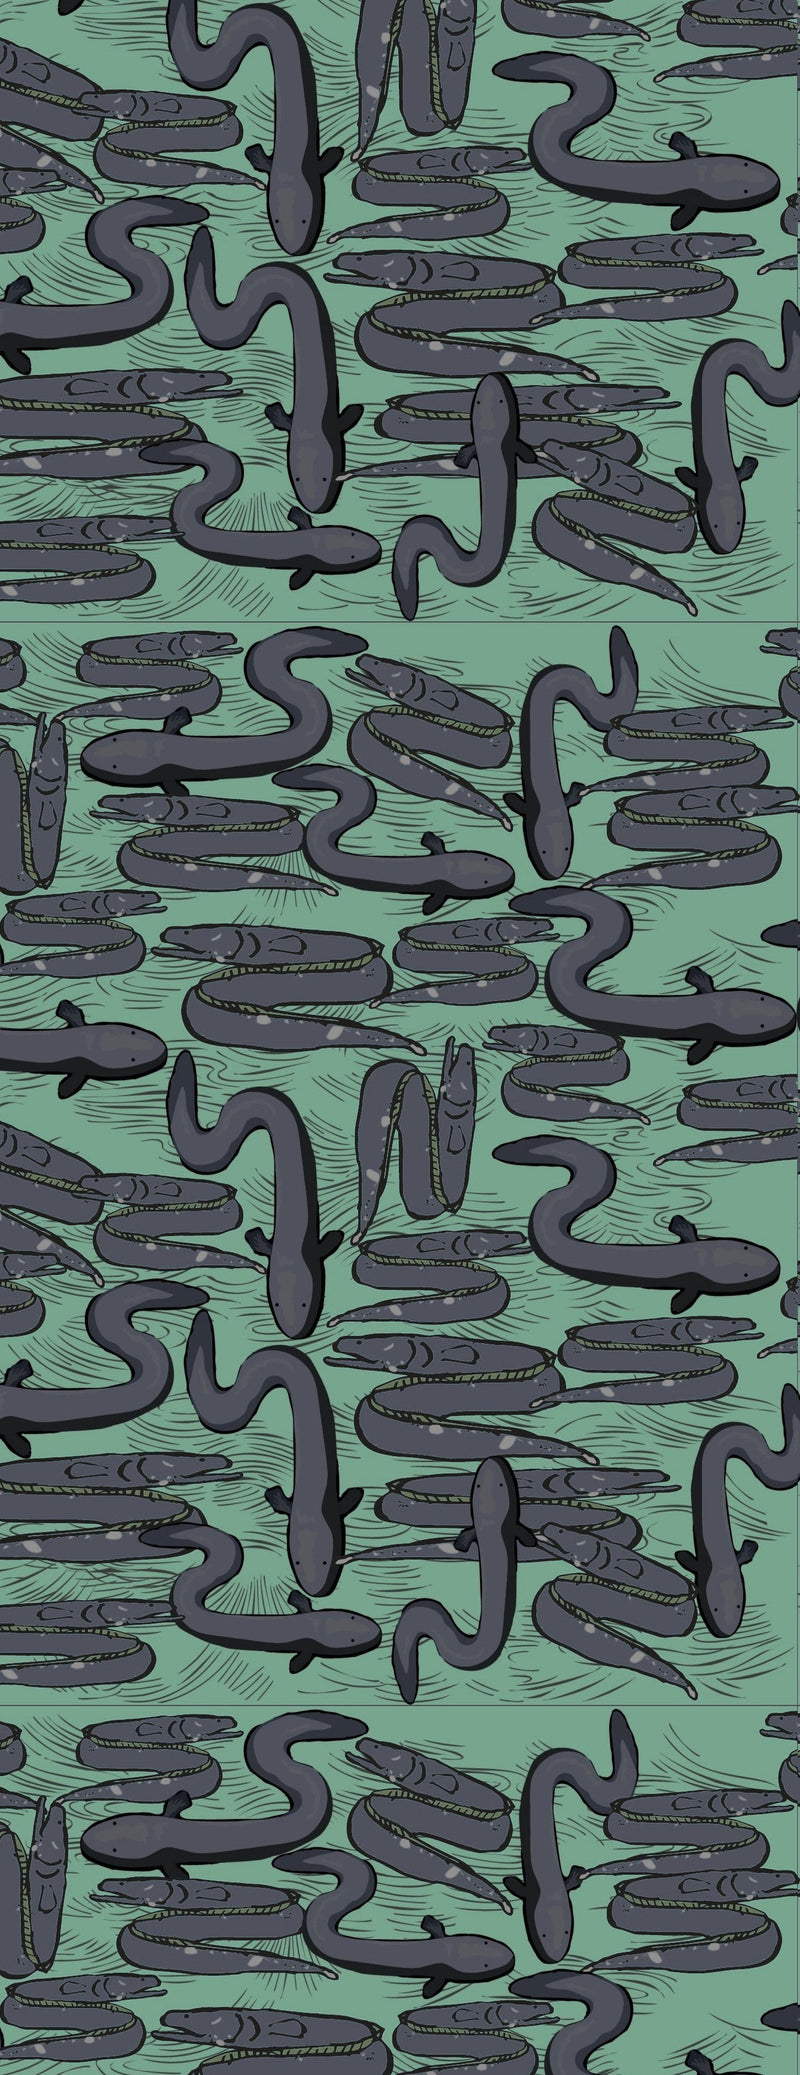 Eel Wallpaper - Green